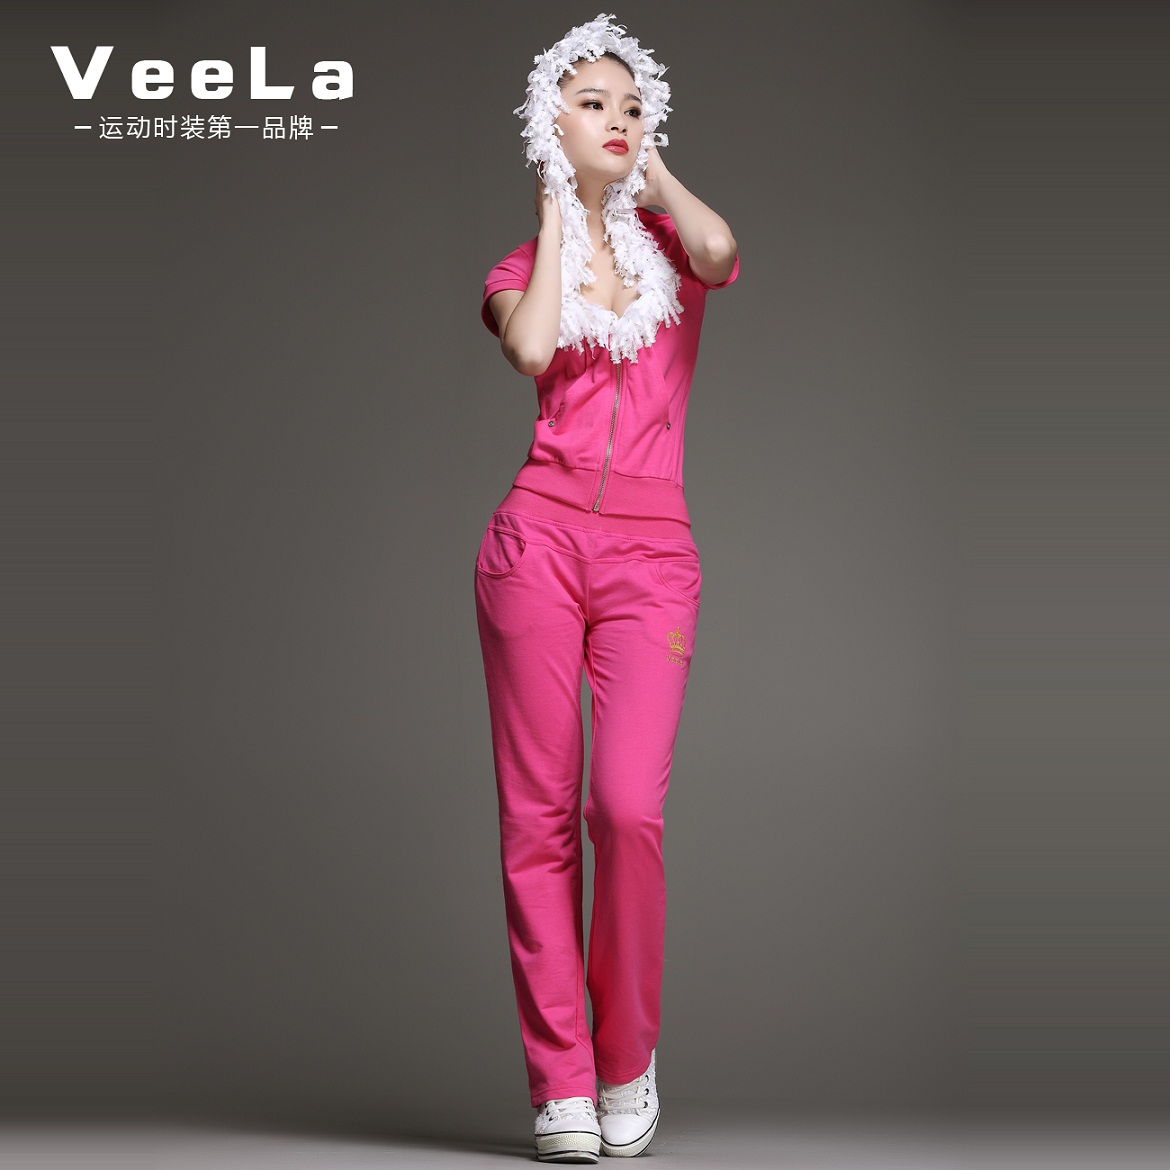 VeeLa运动服套装 时尚休闲修身女装 深U蕾丝大领配简约长裤 卫衣